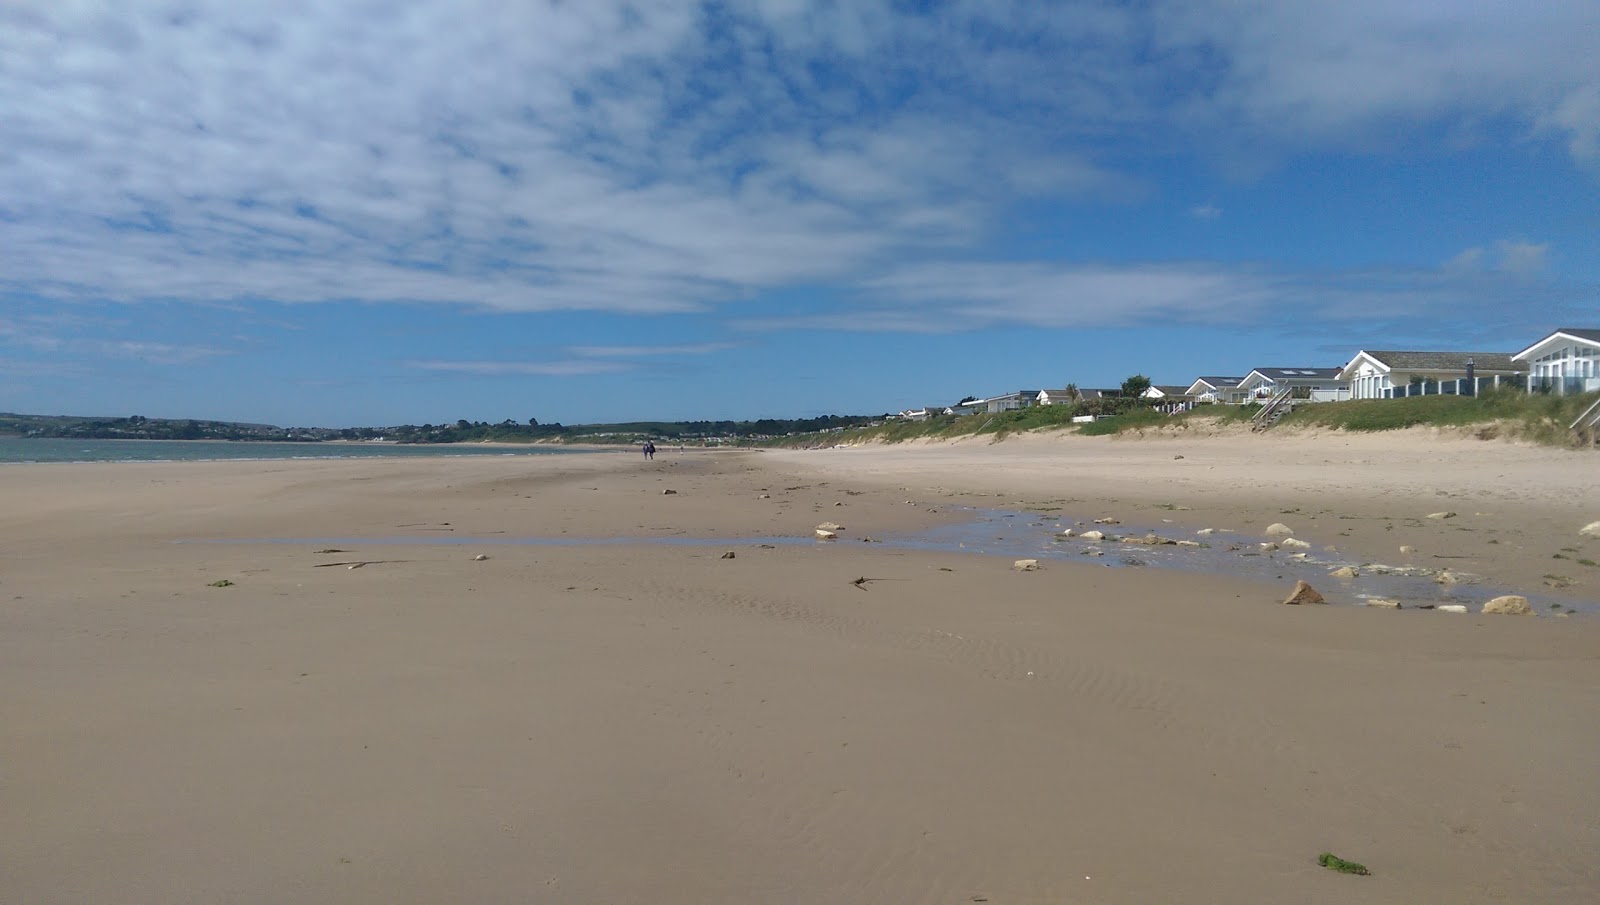 Zdjęcie Quarry beach obszar udogodnień